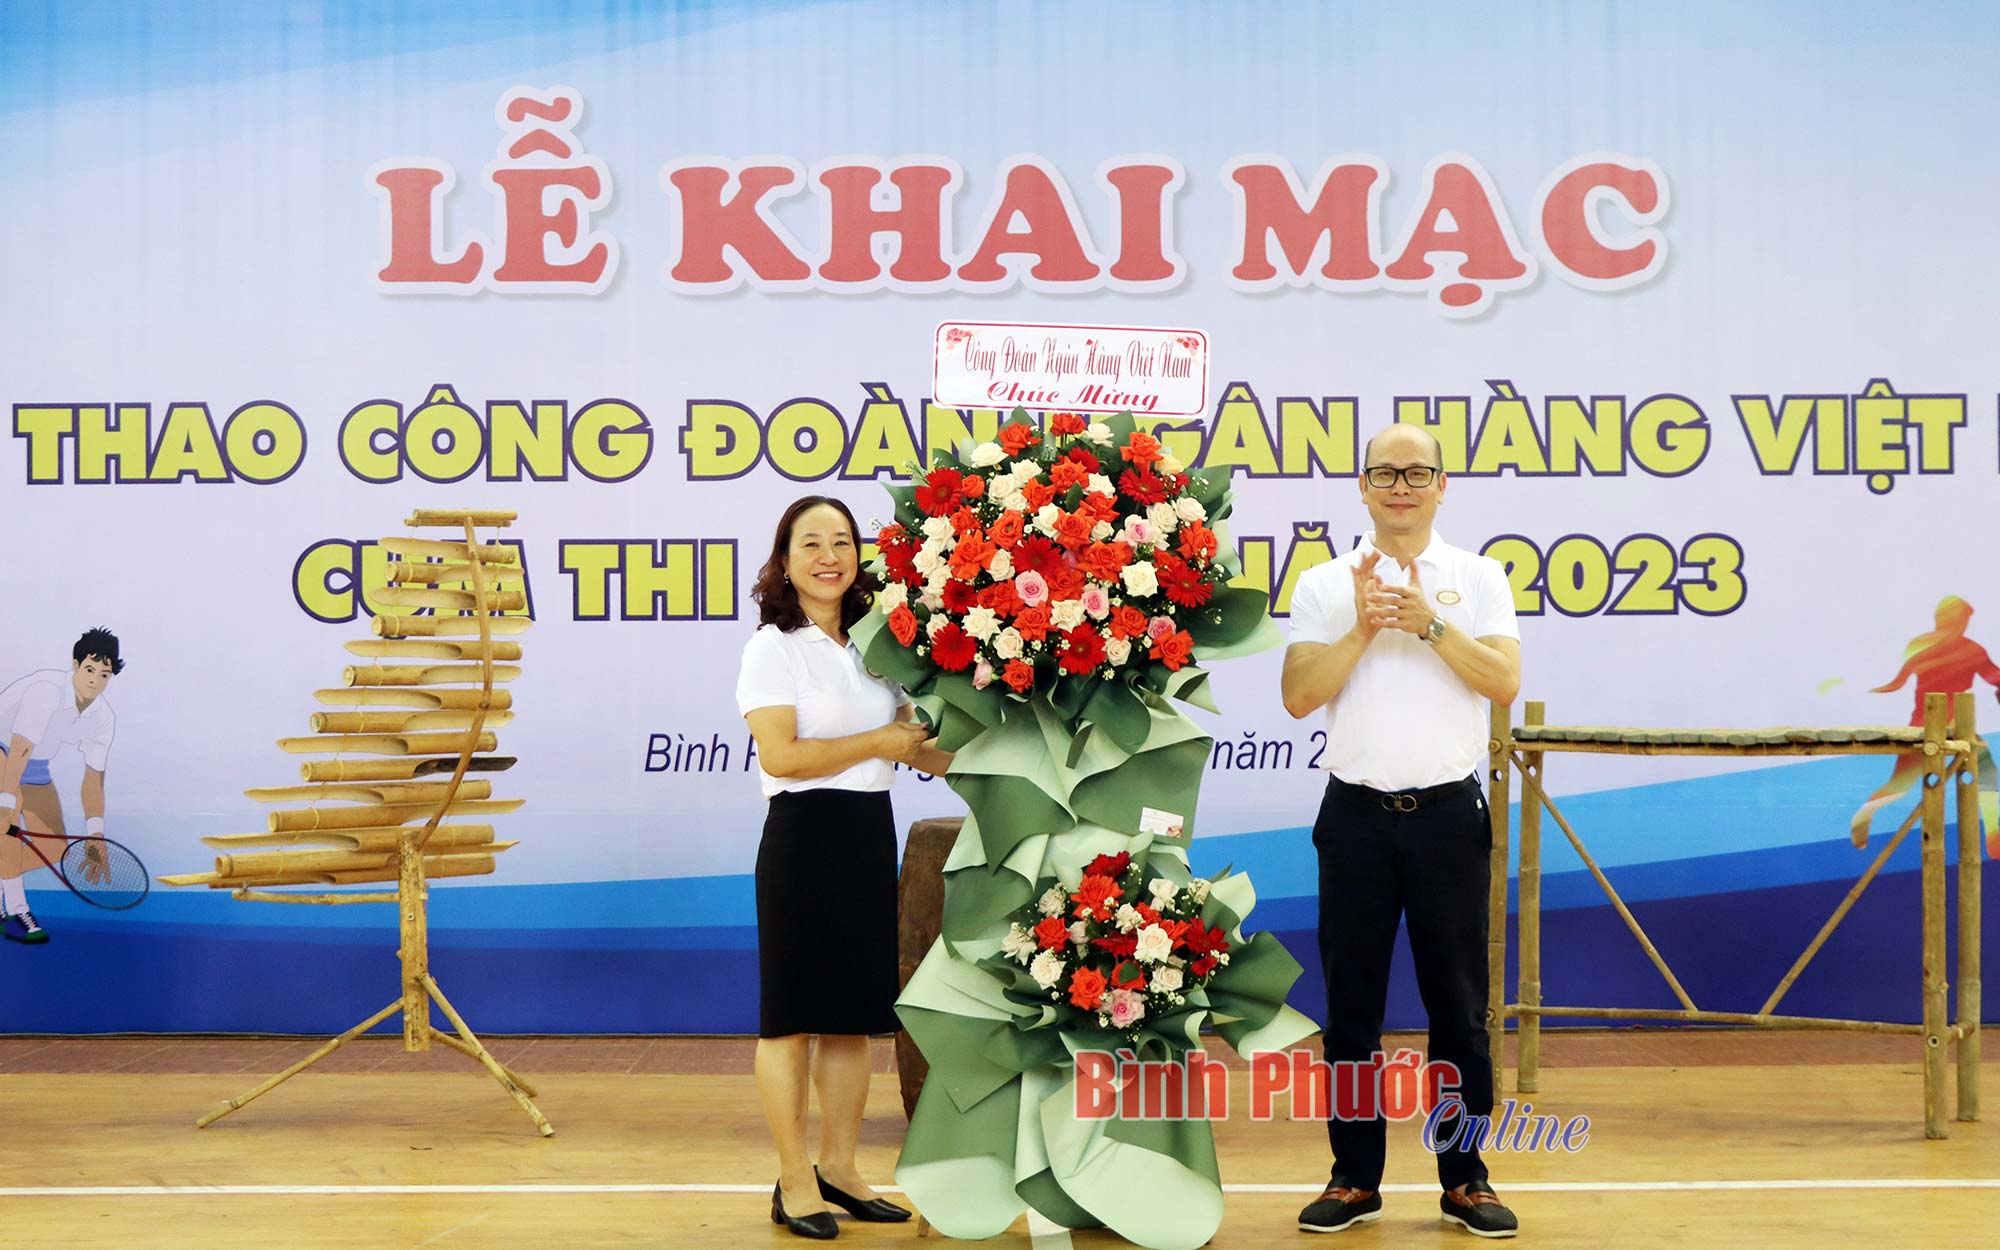 Tưng bừng khai mạc Hội thao Công đoàn Ngân hàng Việt Nam